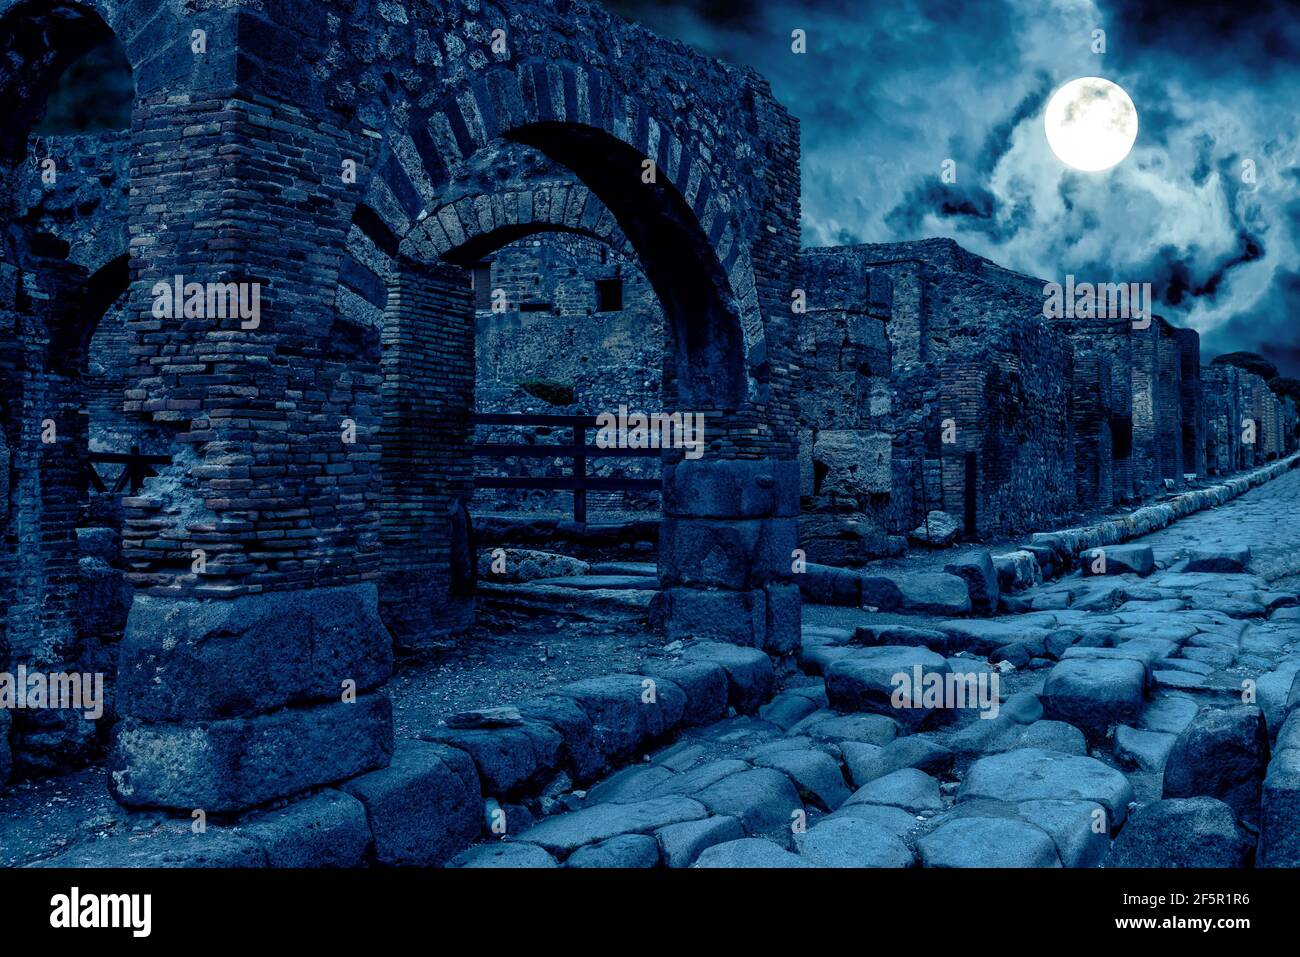 Pompéi la nuit, Italie. Vue apocalyptique mystique des maisons détruites de la ville antique en pleine lune. Scène sombre effrayante pour le thème d'Halloween. Concept de h Banque D'Images